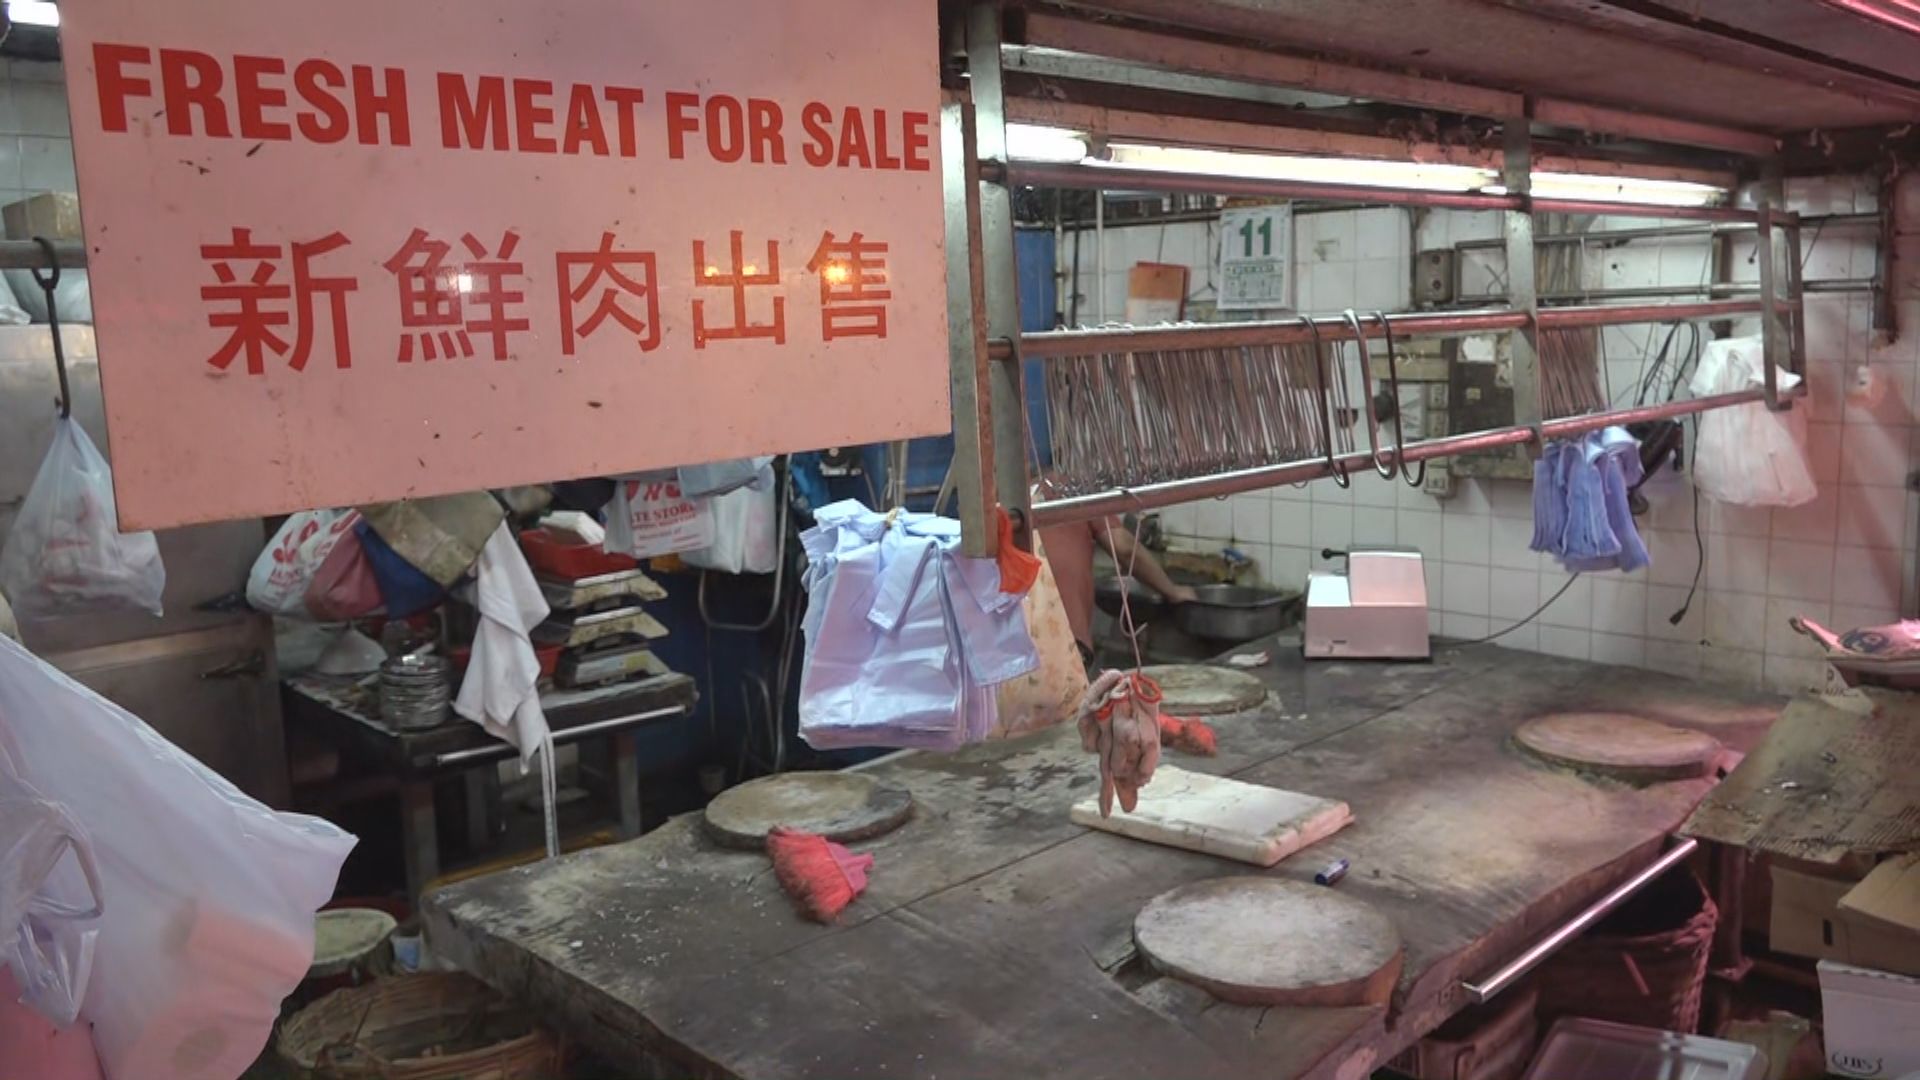 街市周日有新鮮豬肉供應　惟業界料供應有限